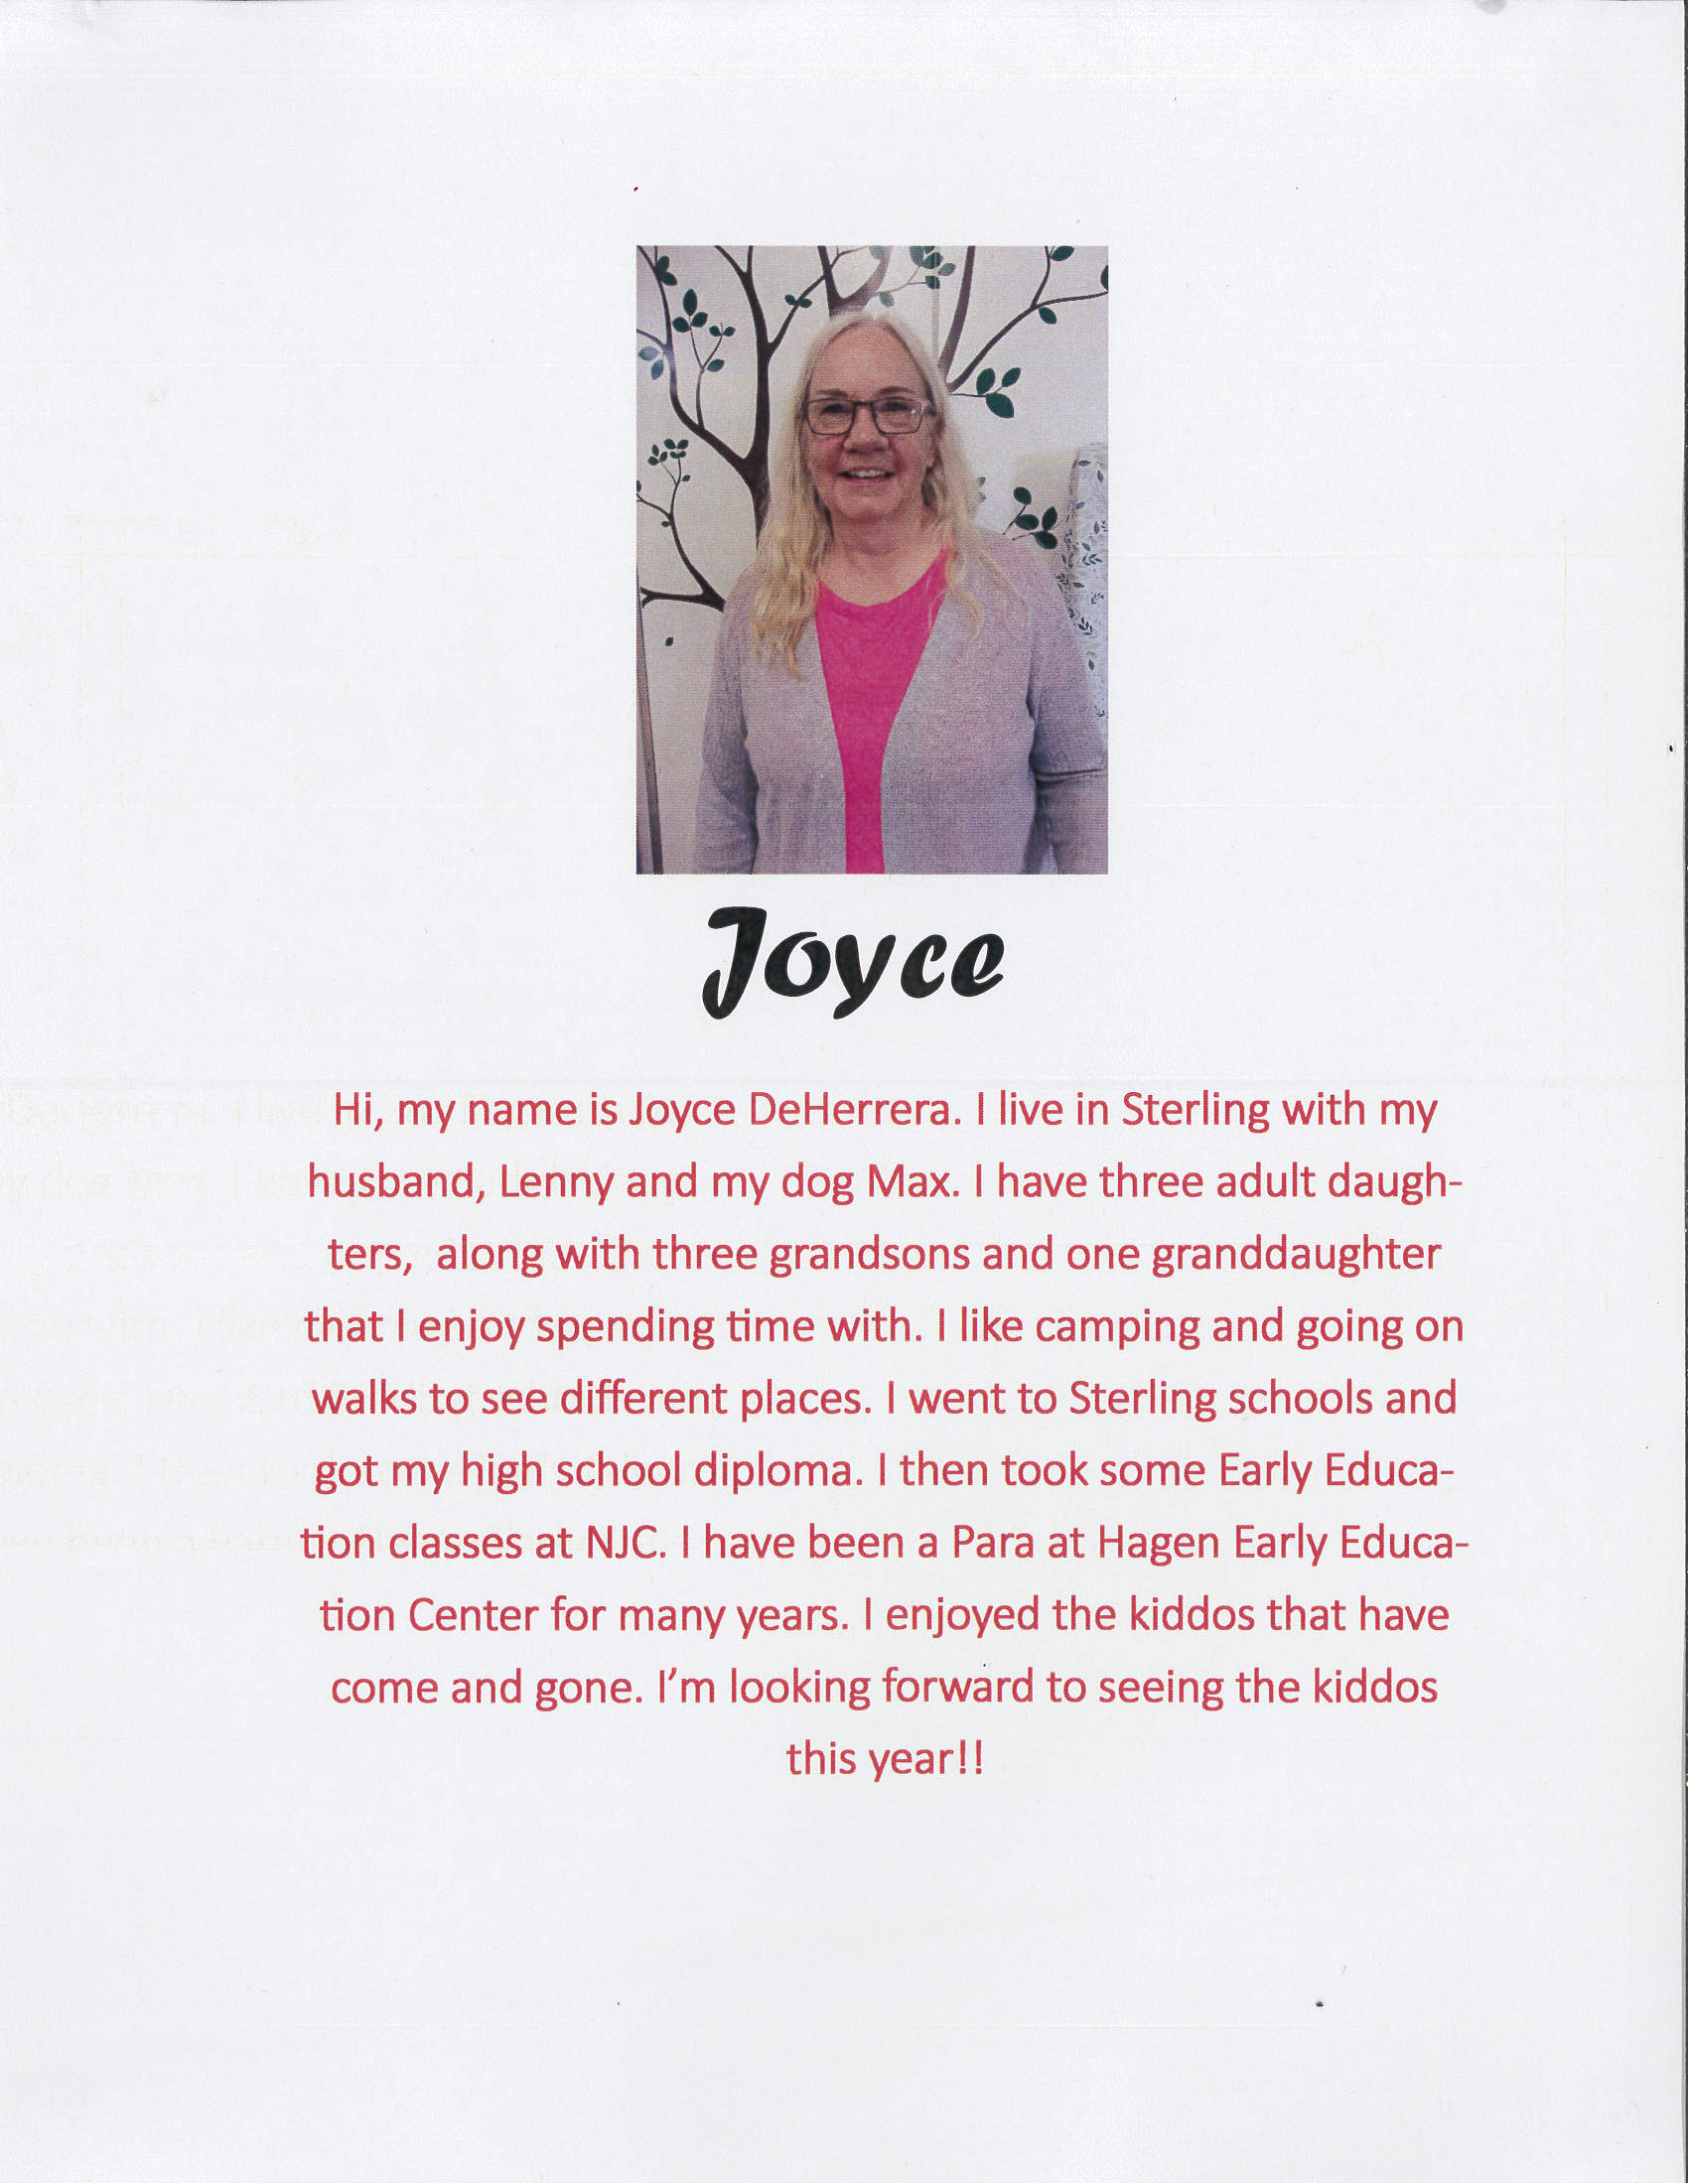 Joyce Deherrera - Meet the Teacher